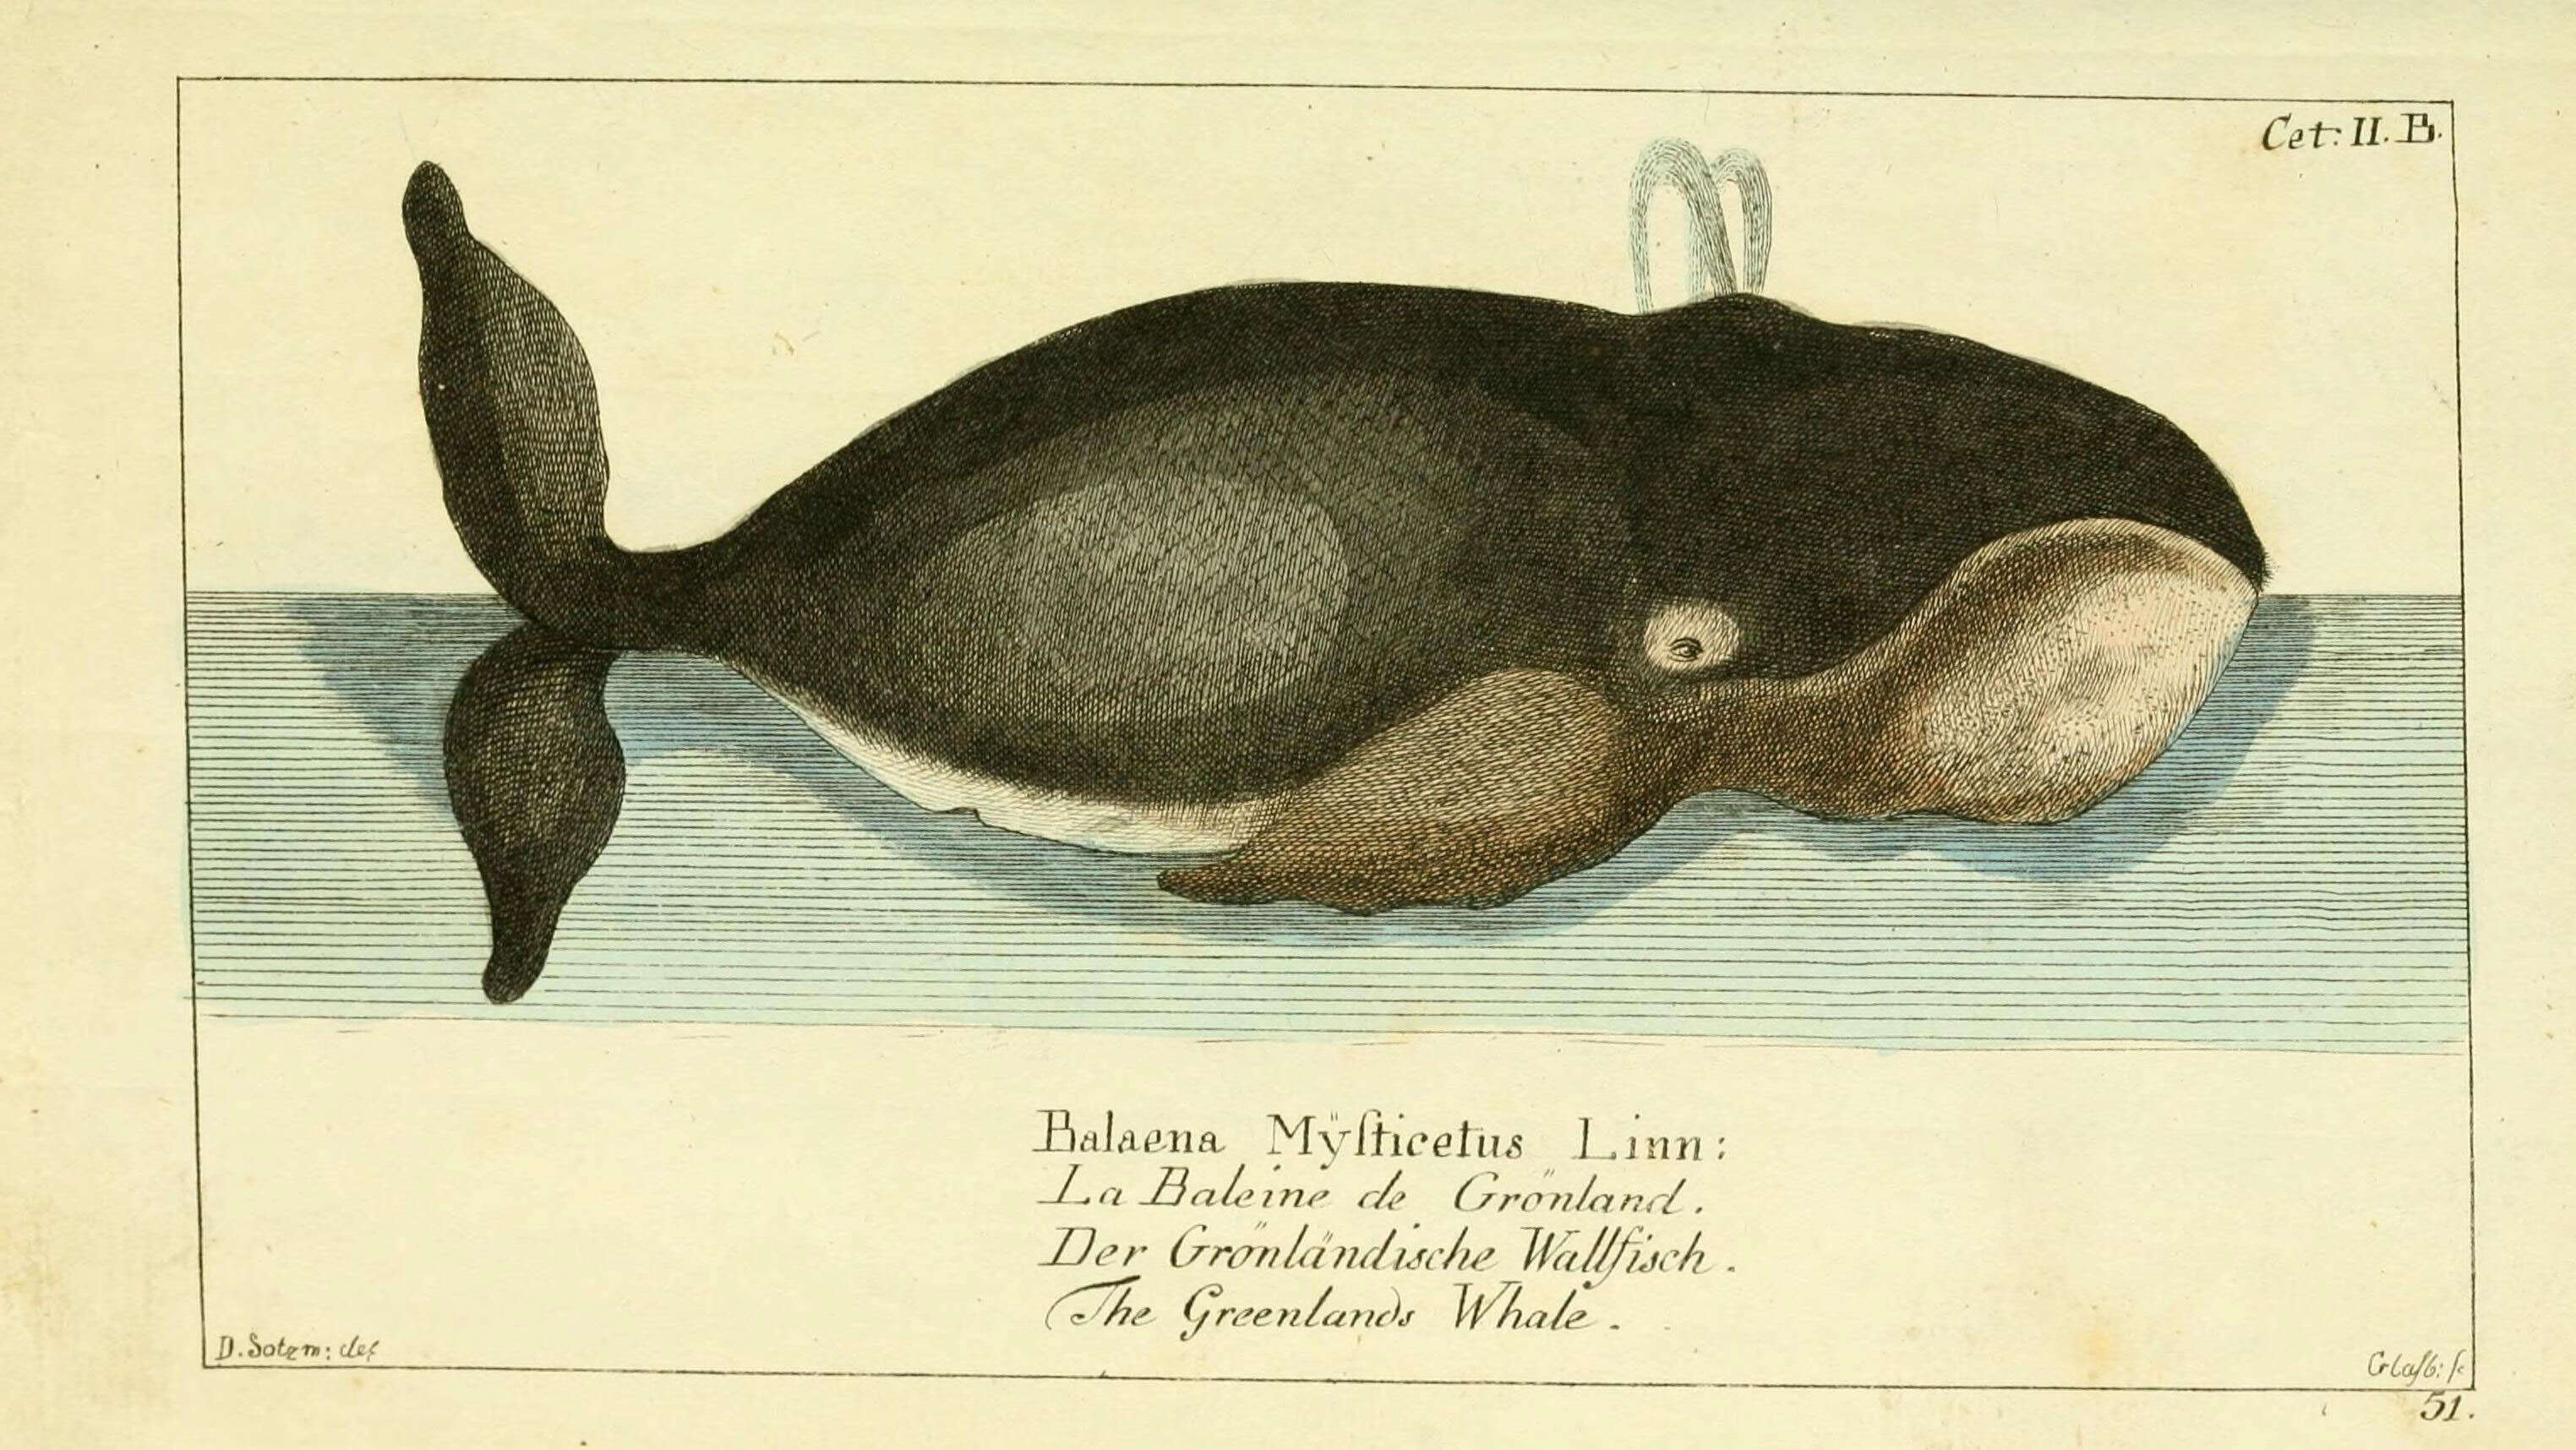 Image of Balaena Linnaeus 1758